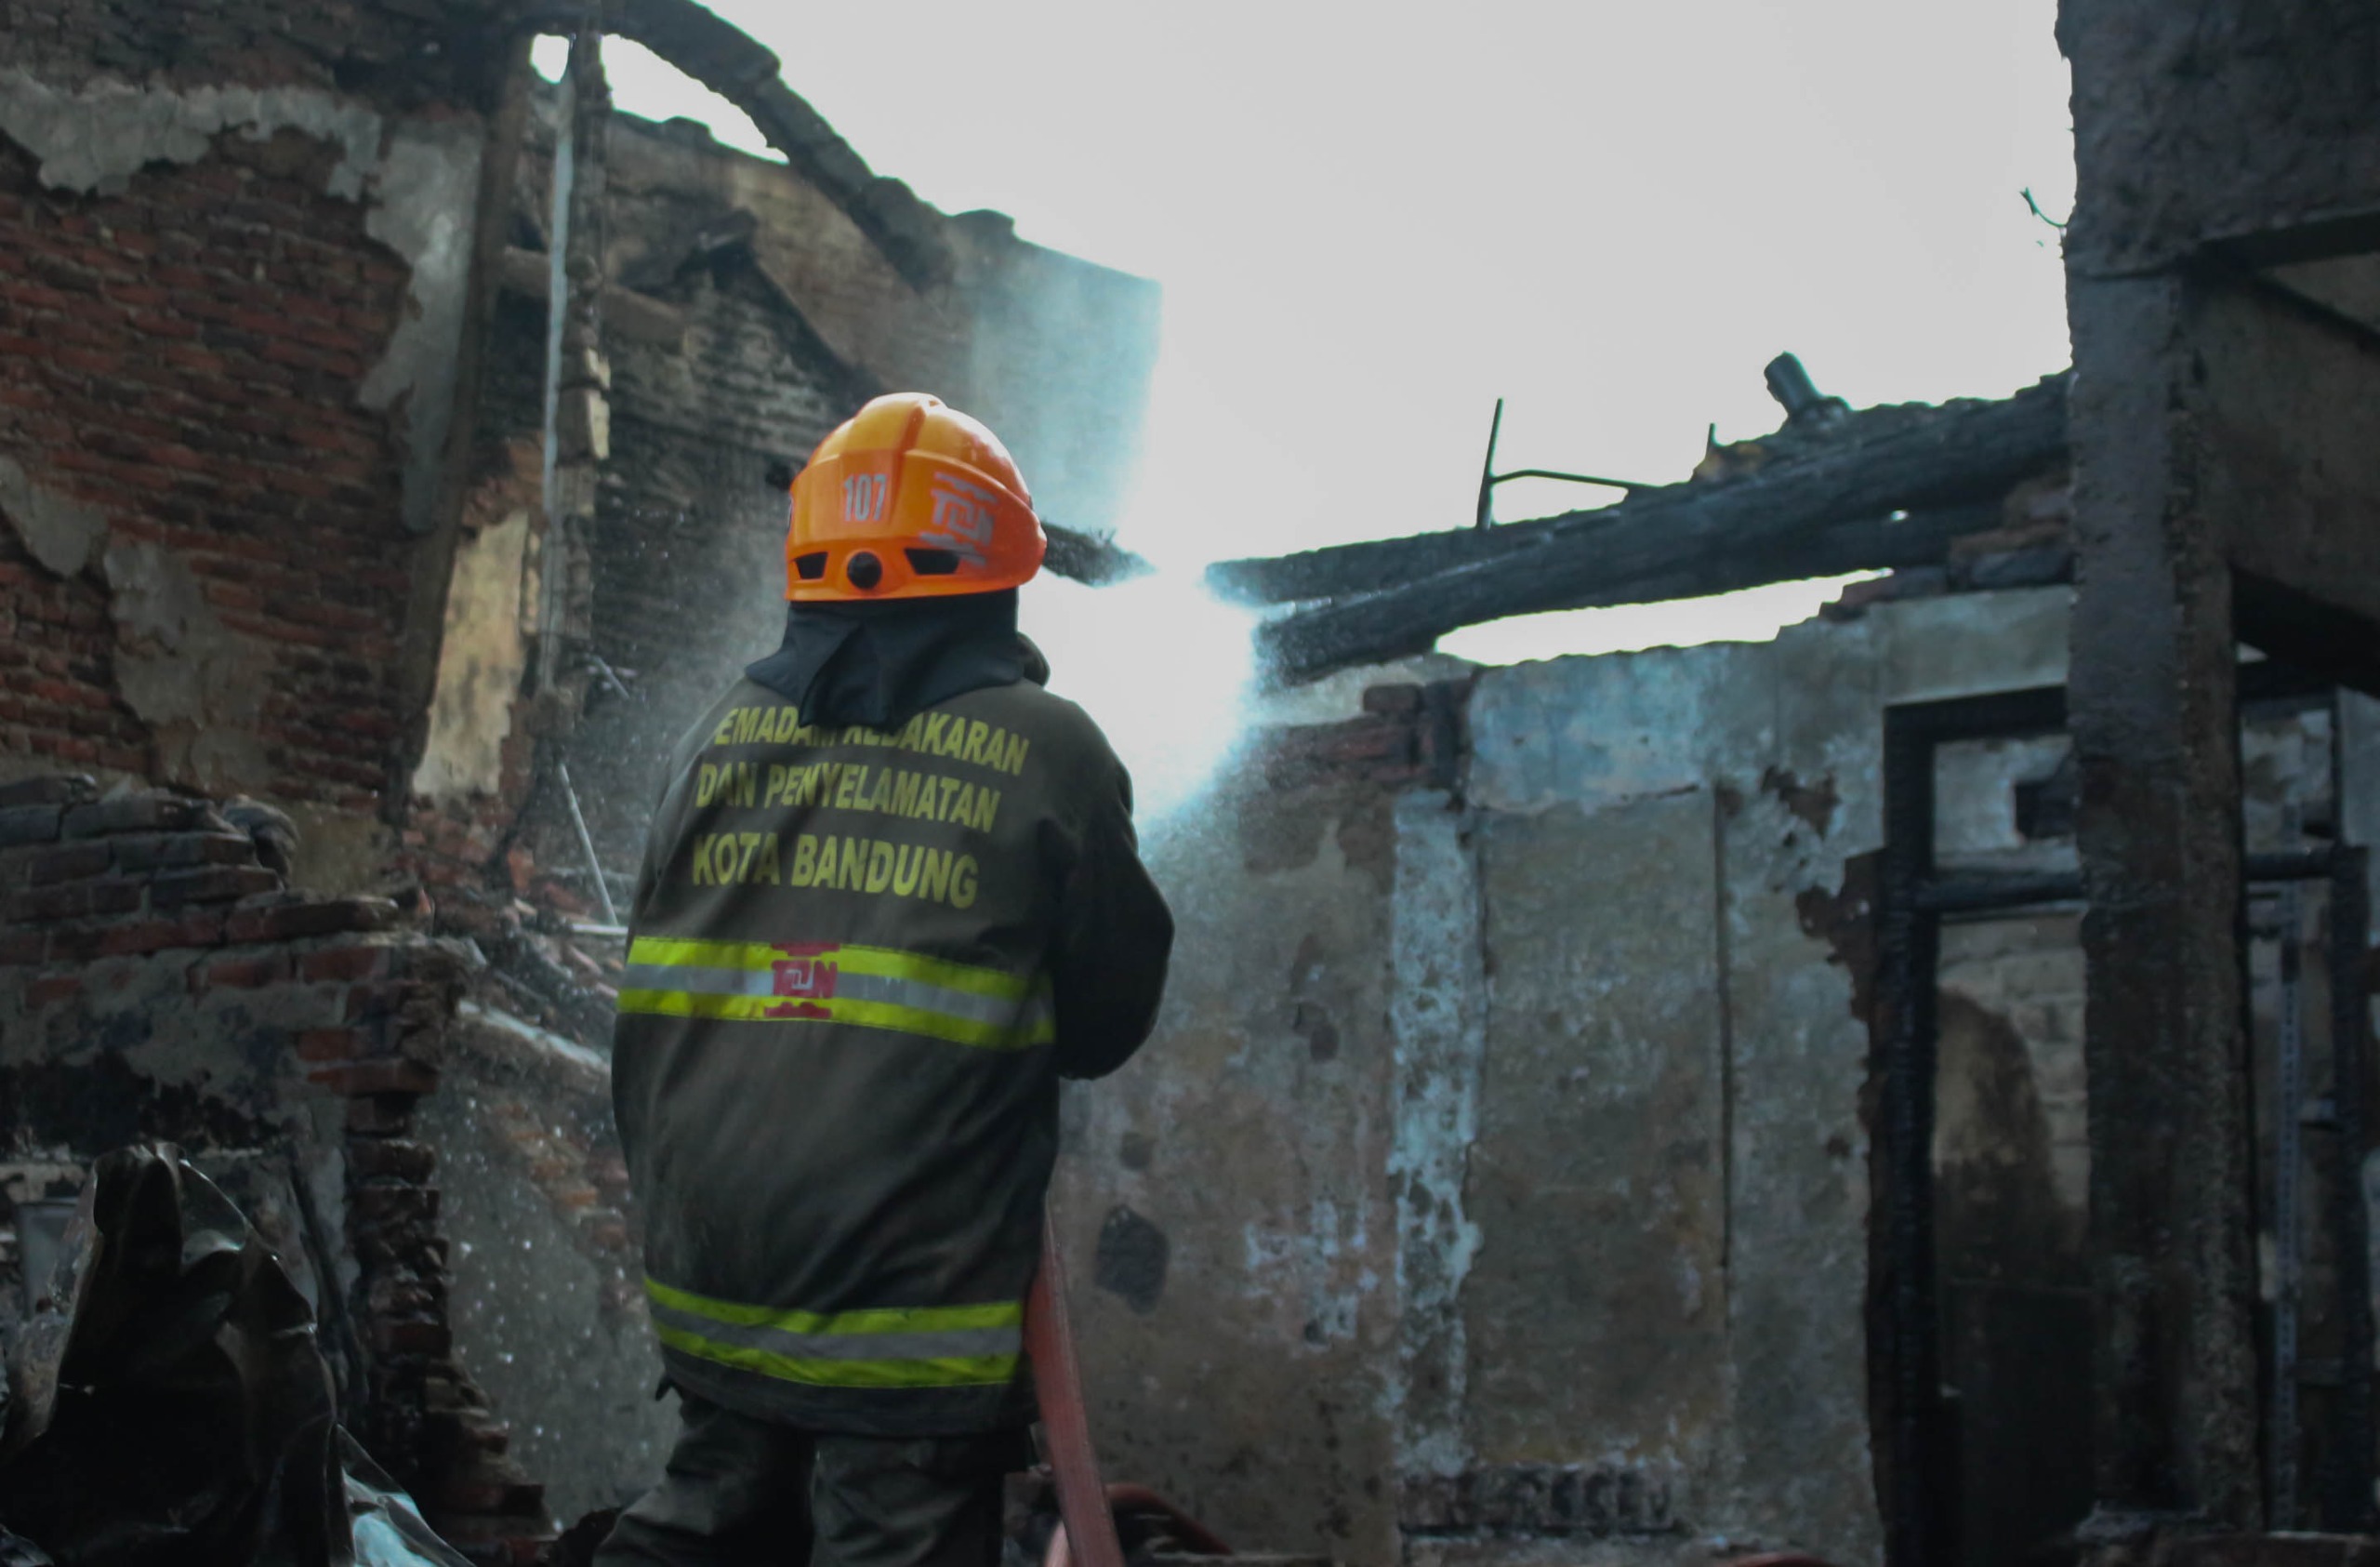 Pemadam Kebakaran Kota Bandung melakukan proses pendingingan di puing kebakaran kawasan Jalan Peta bebera[a waktu lalu. (Pandu Muslim/Jabar Ekspres)